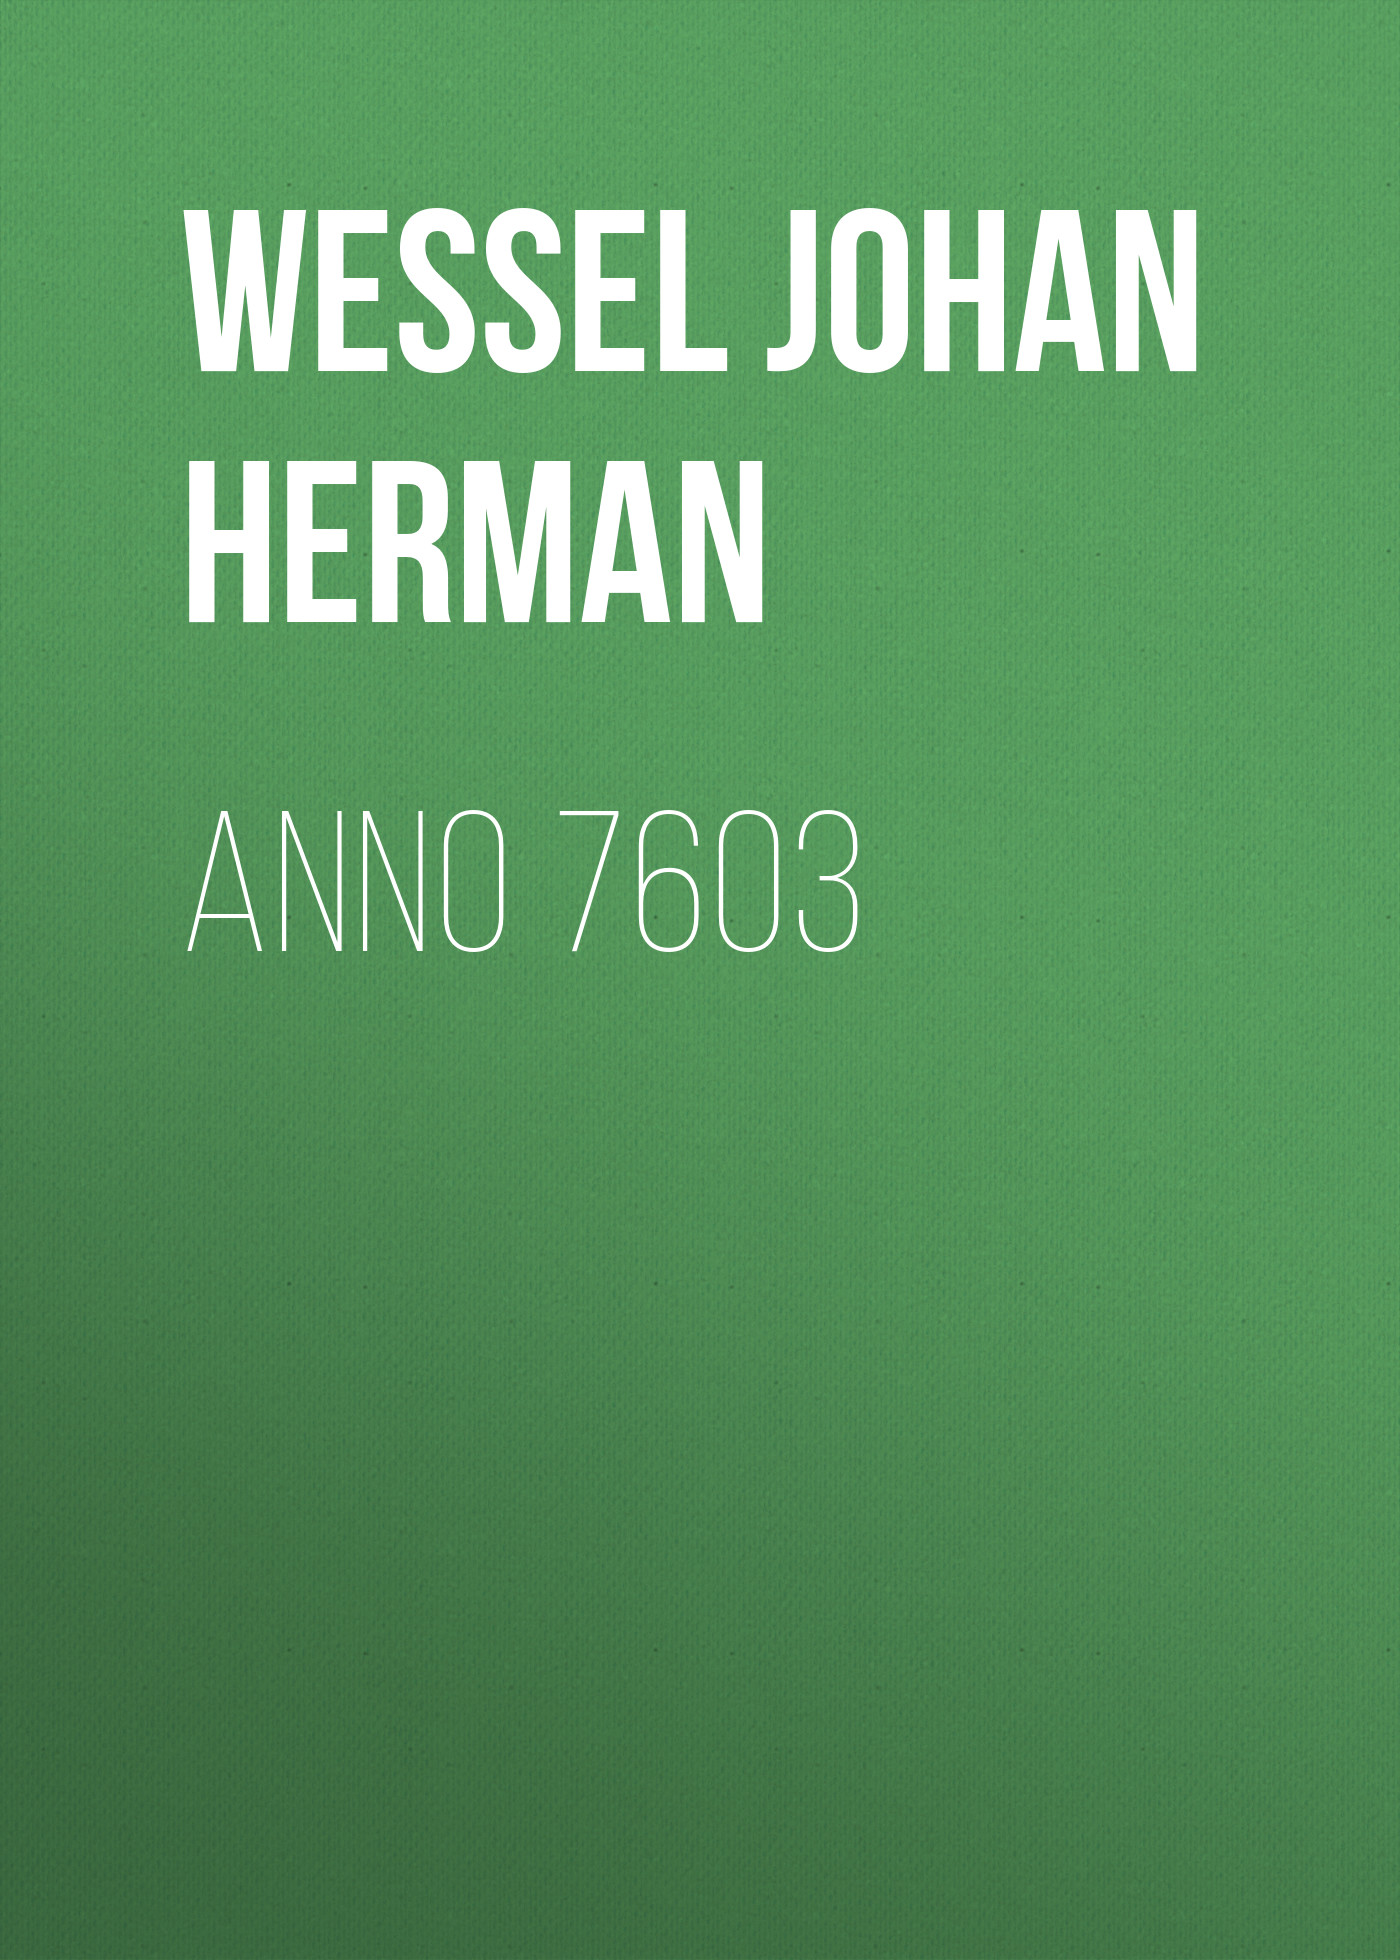 Книга Anno 7603 из серии , созданная Johan Wessel, может относится к жанру Зарубежная драматургия, Драматургия, Зарубежная старинная литература, Зарубежная классика. Стоимость электронной книги Anno 7603 с идентификатором 34337642 составляет 0 руб.